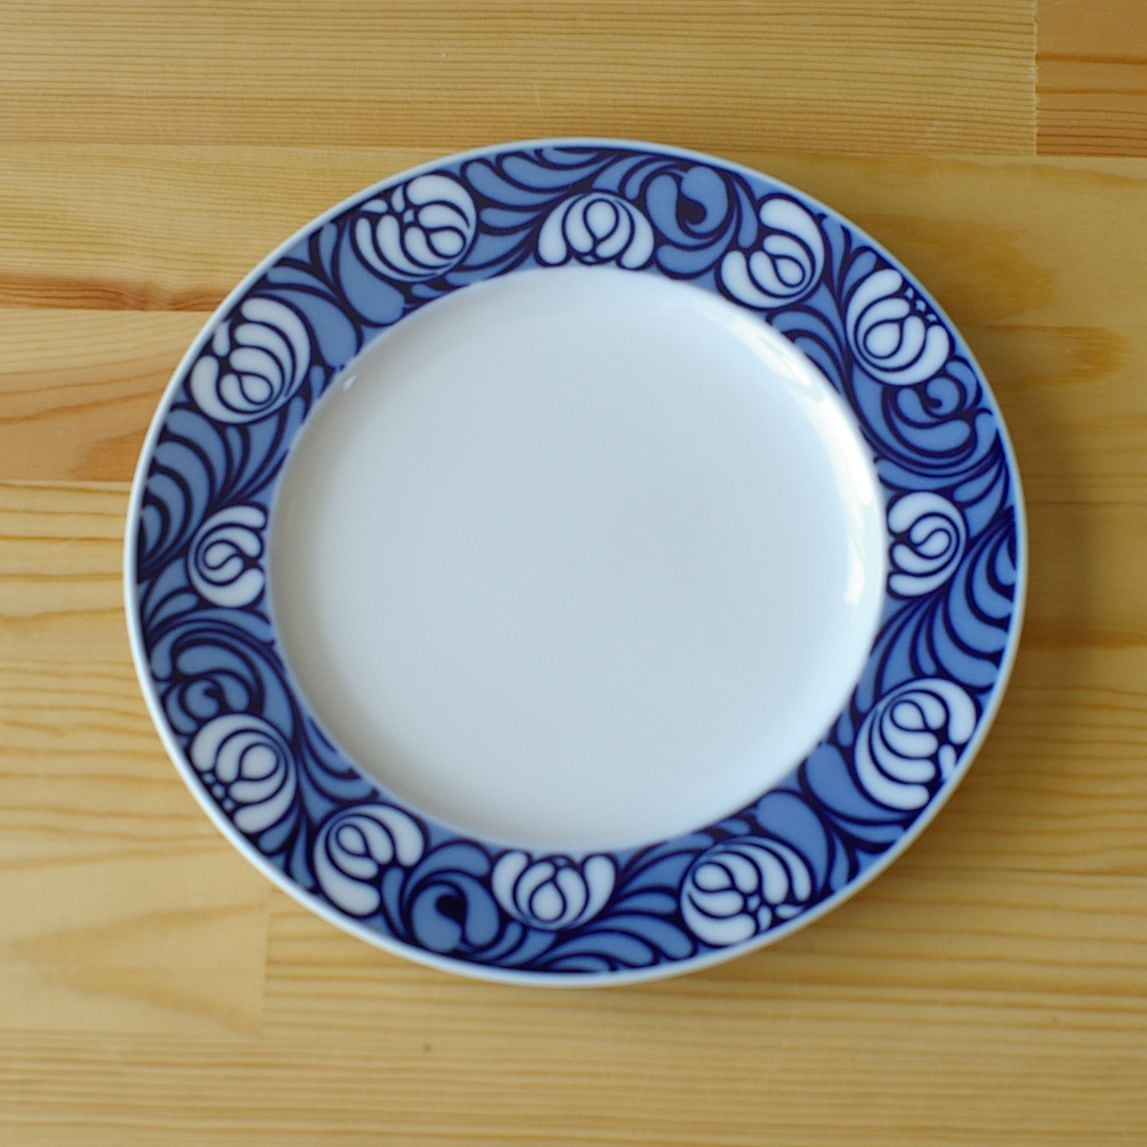 ローゼンタール 青と白のレトロな花柄 デザートプレート お皿 20cm ...